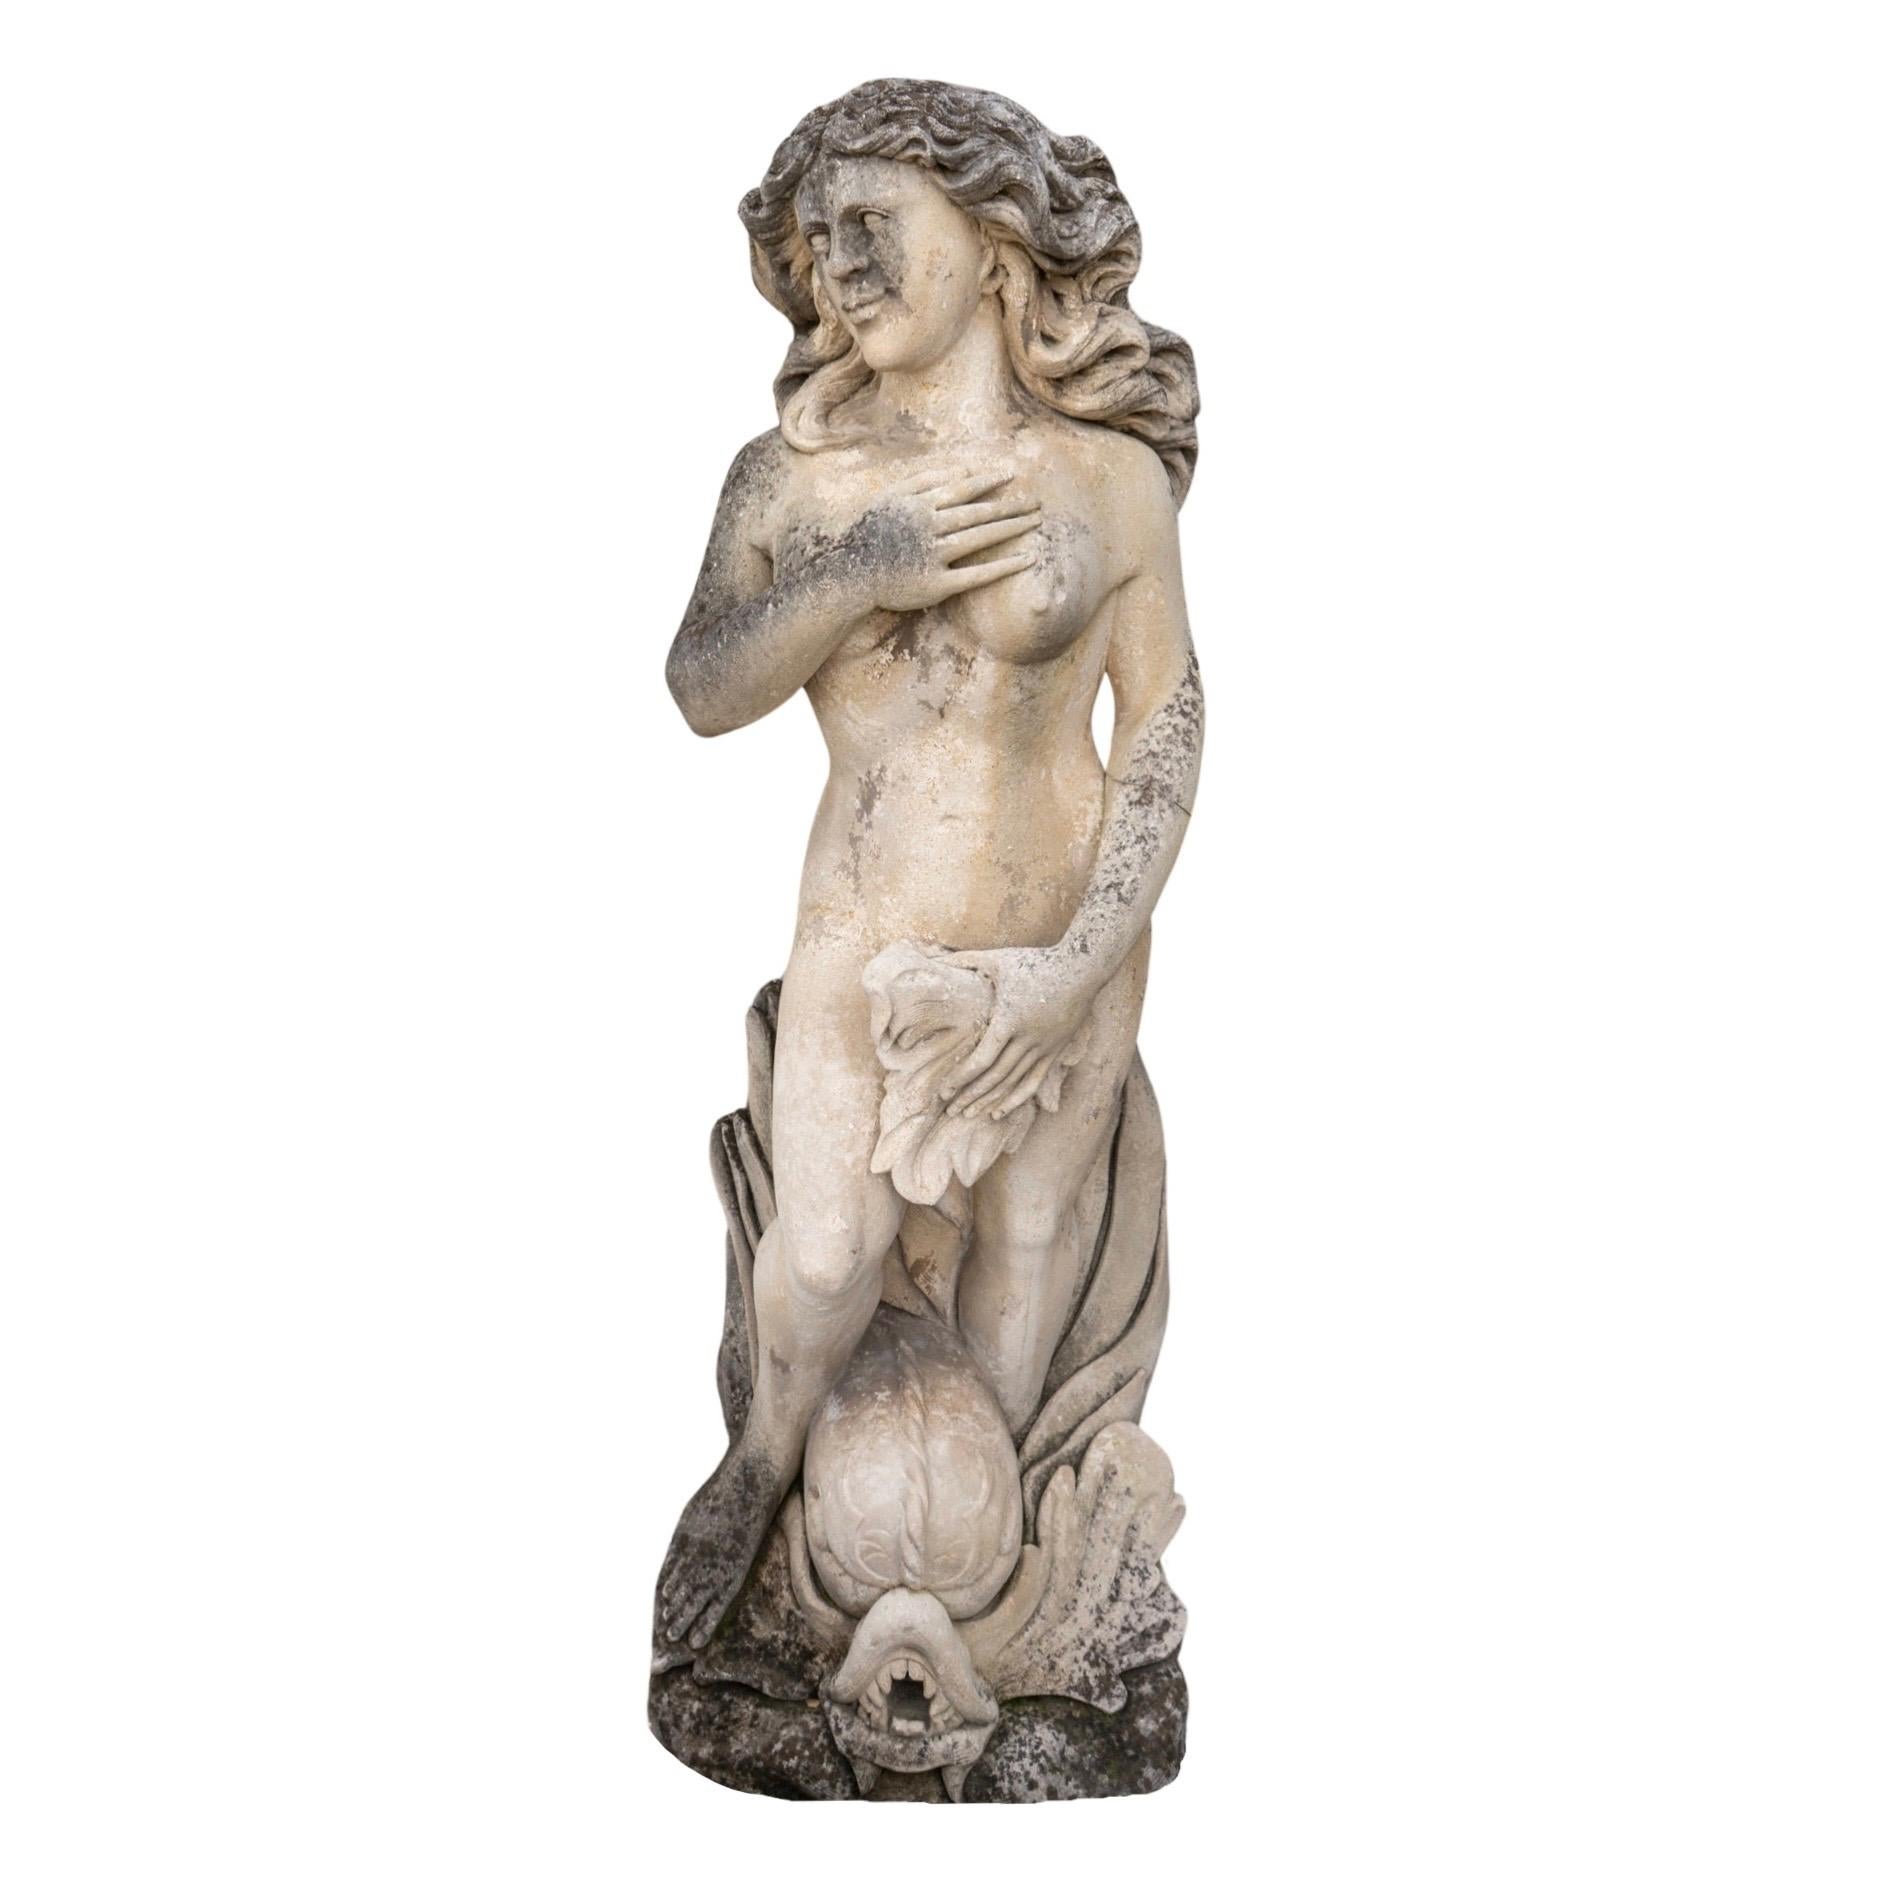 Cette sculpture de Vénus en pierre calcaire italienne est une représentation étonnante de la déesse de l'amour, sculptée avec des détails incroyables dans une pierre calcaire authentique du XVIIIe siècle provenant d'Italie. Le poisson mythique